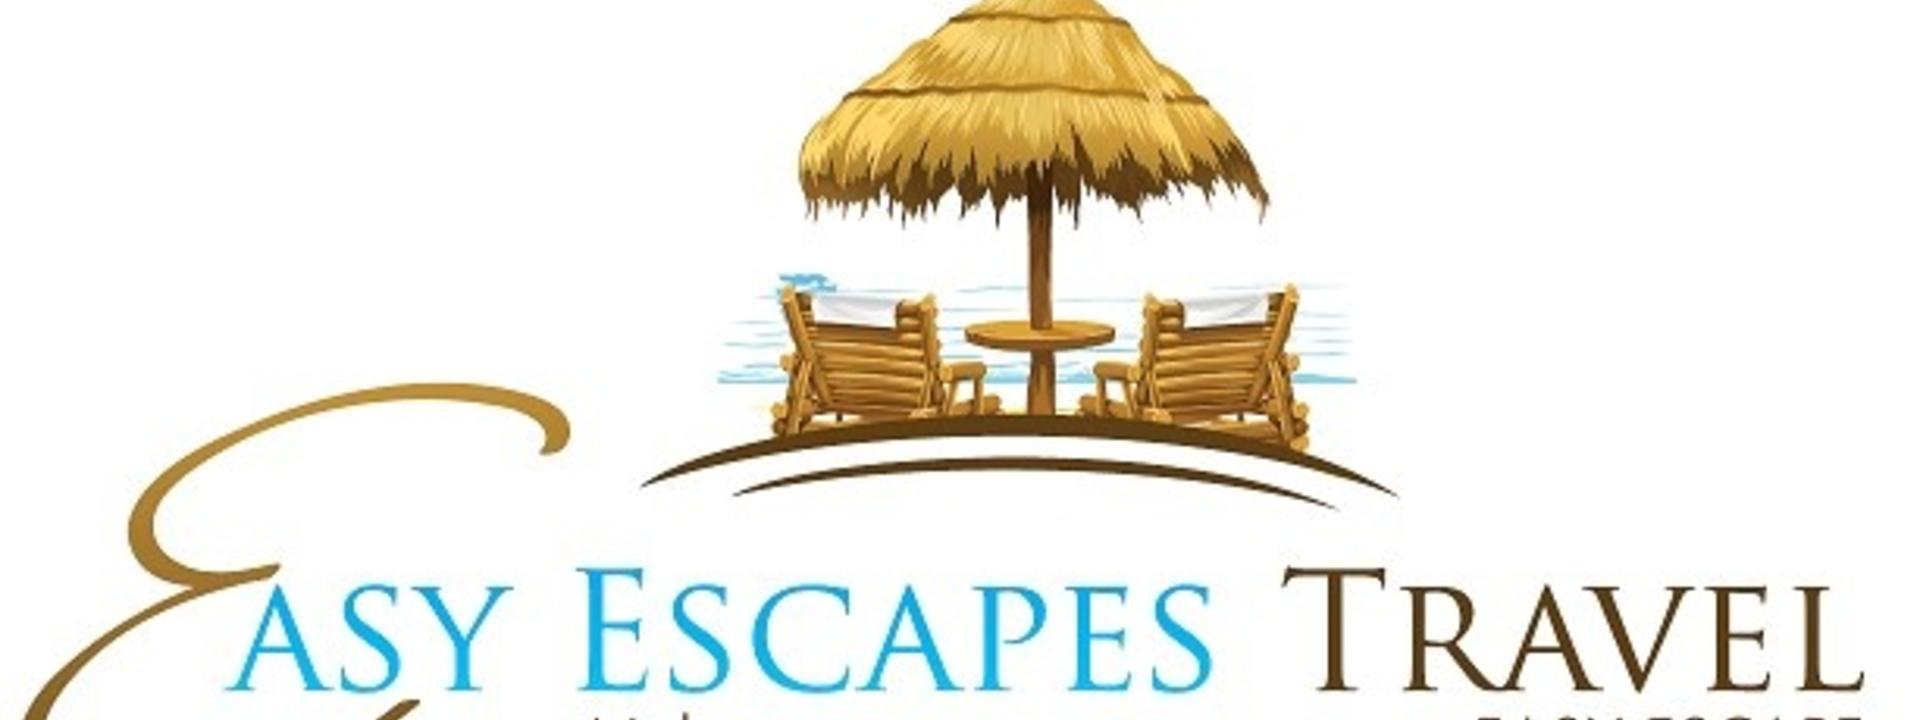 Logo: Easy Escapes Travel